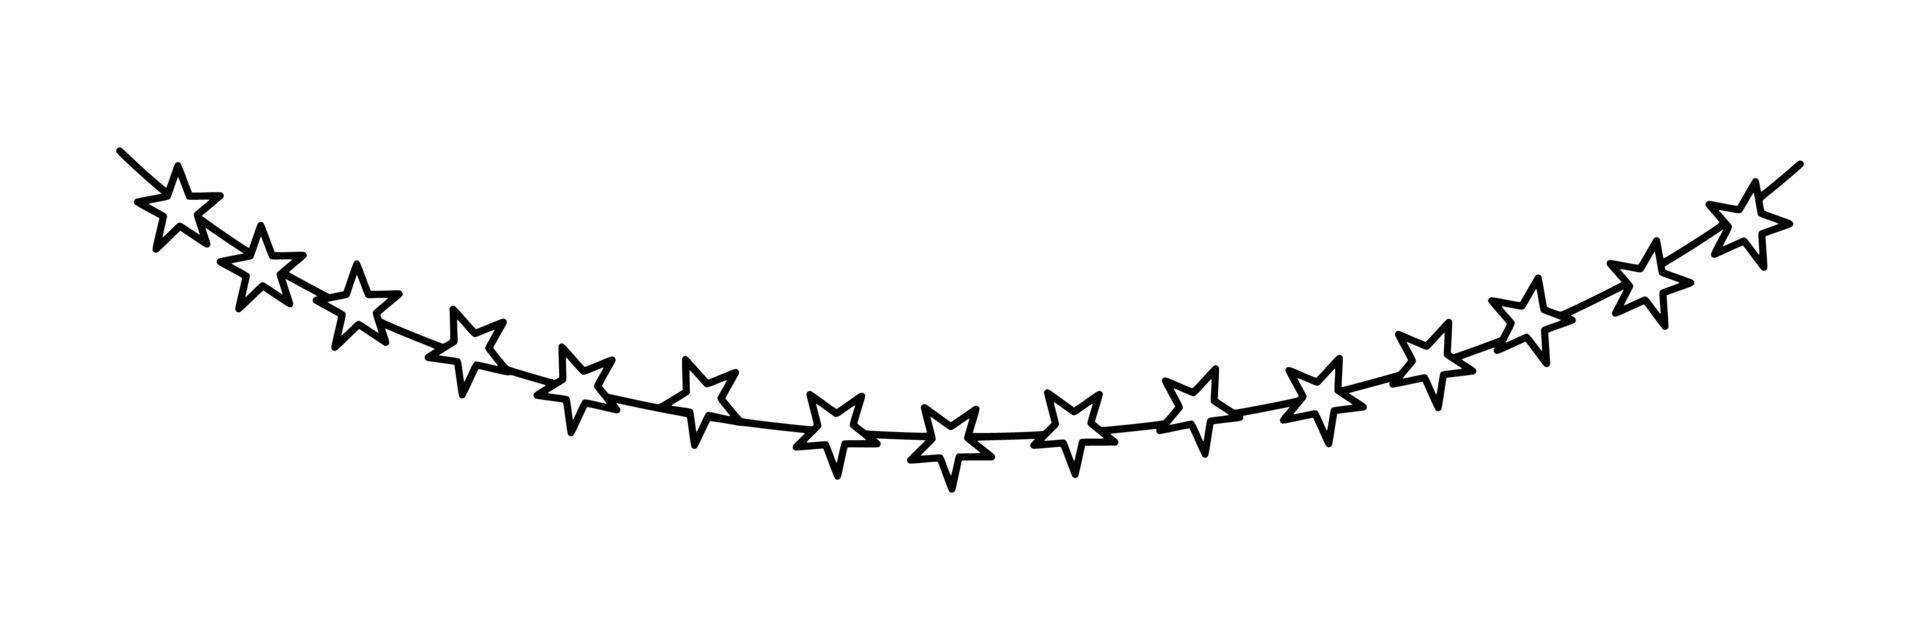 guirlande d'étoiles pour carnaval ou fête. guirlandes de décor isolés sur fond blanc. illustration vectorielle vecteur